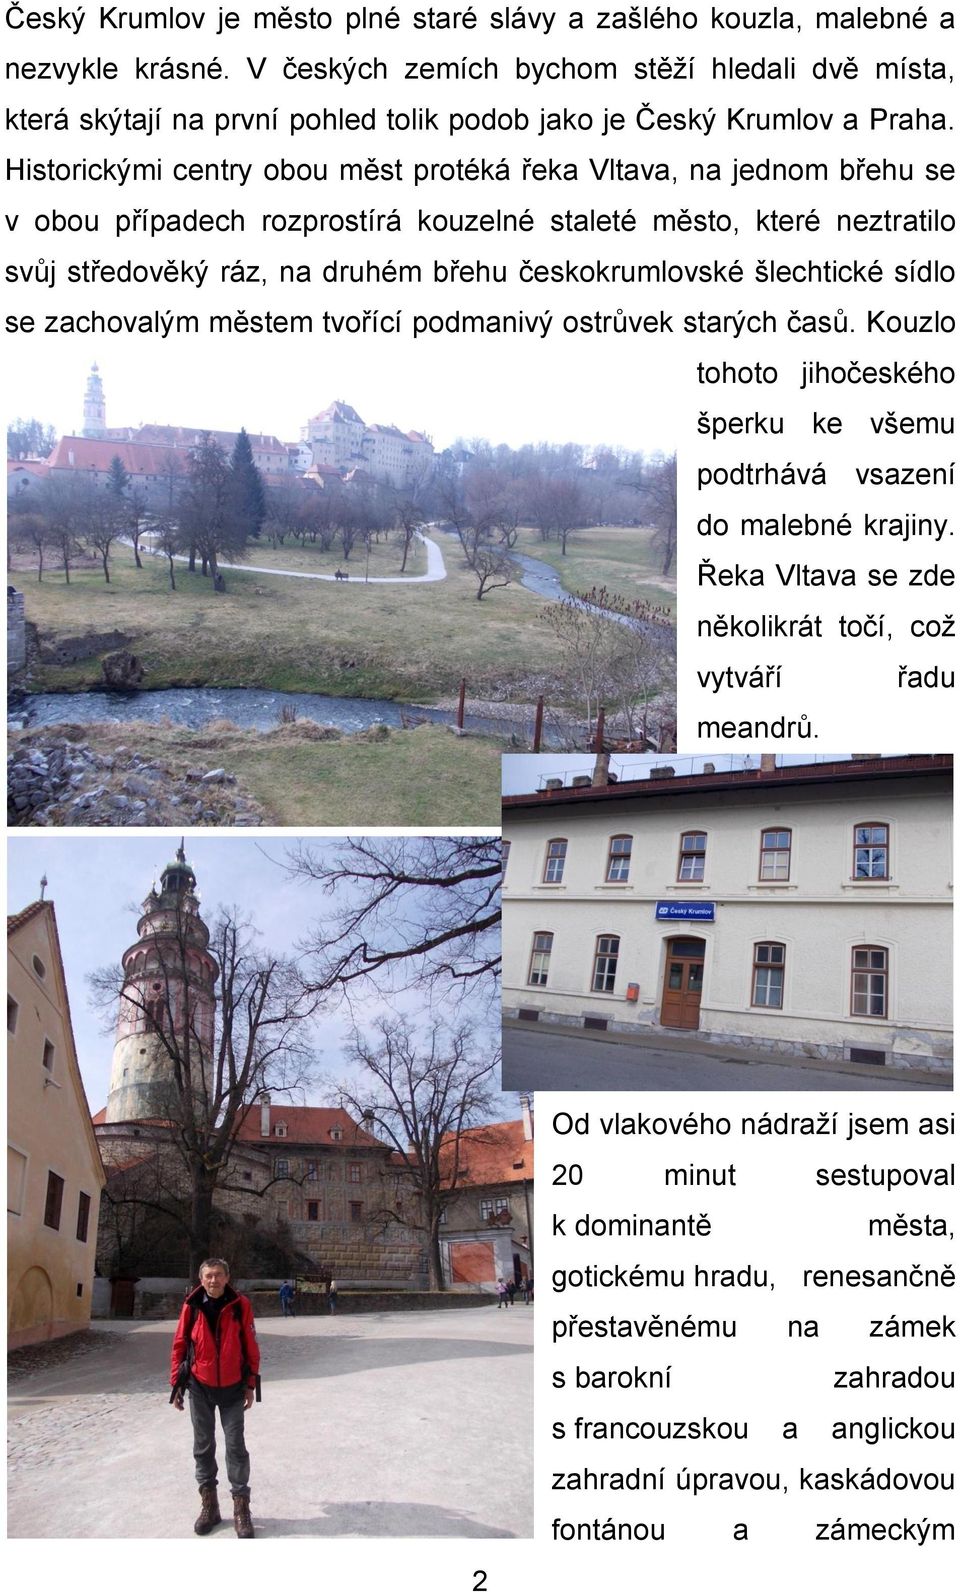 Historickými centry obou měst protéká řeka Vltava, na jednom břehu se v obou případech rozprostírá kouzelné staleté město, které neztratilo svůj středověký ráz, na druhém břehu českokrumlovské